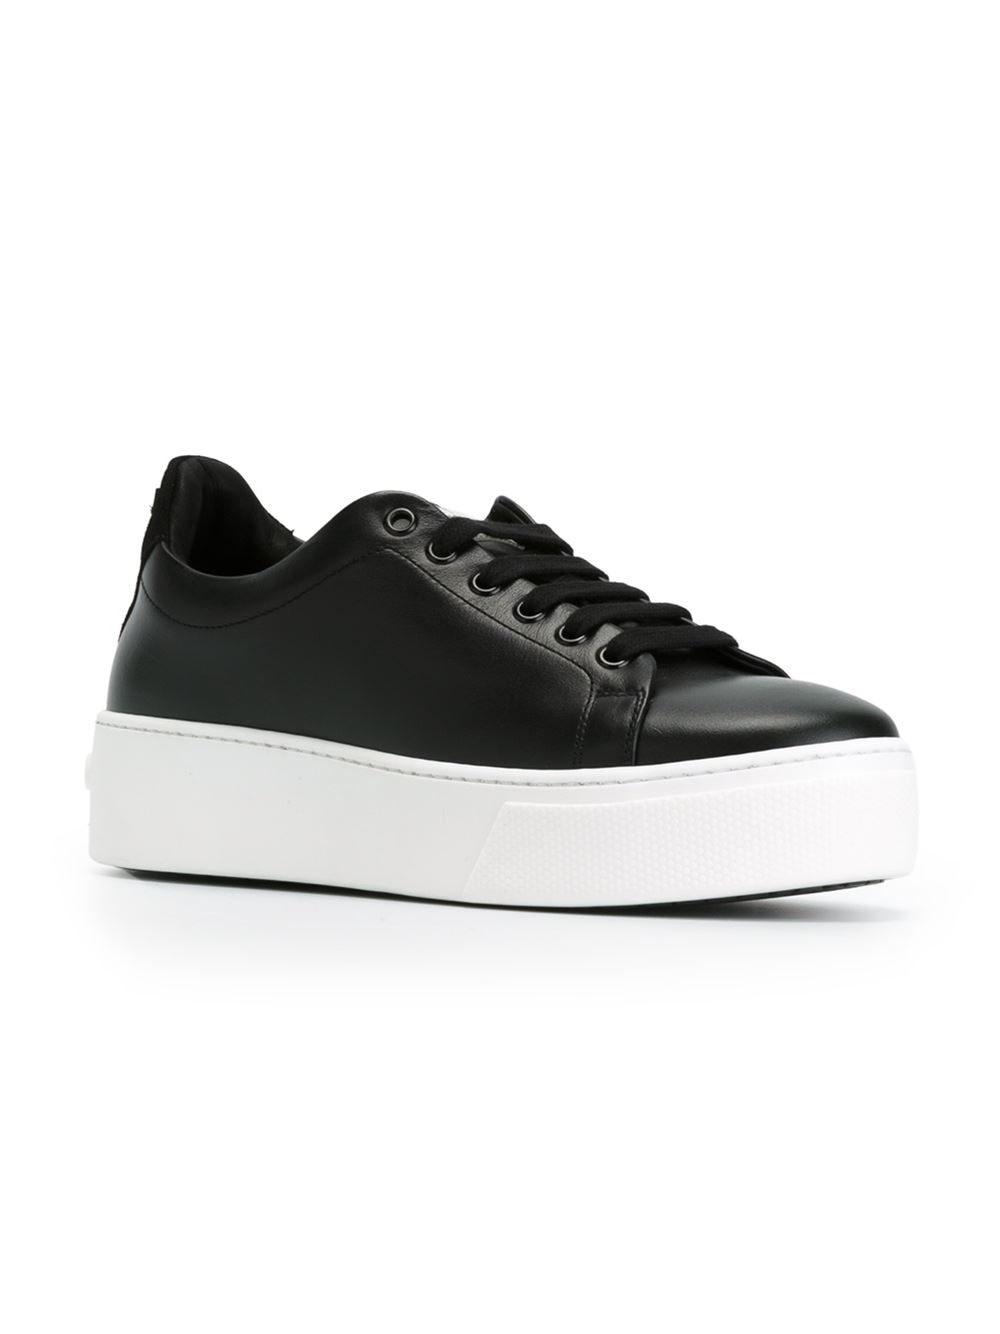 Lyst - Kenzo Platform Sneakers in Black